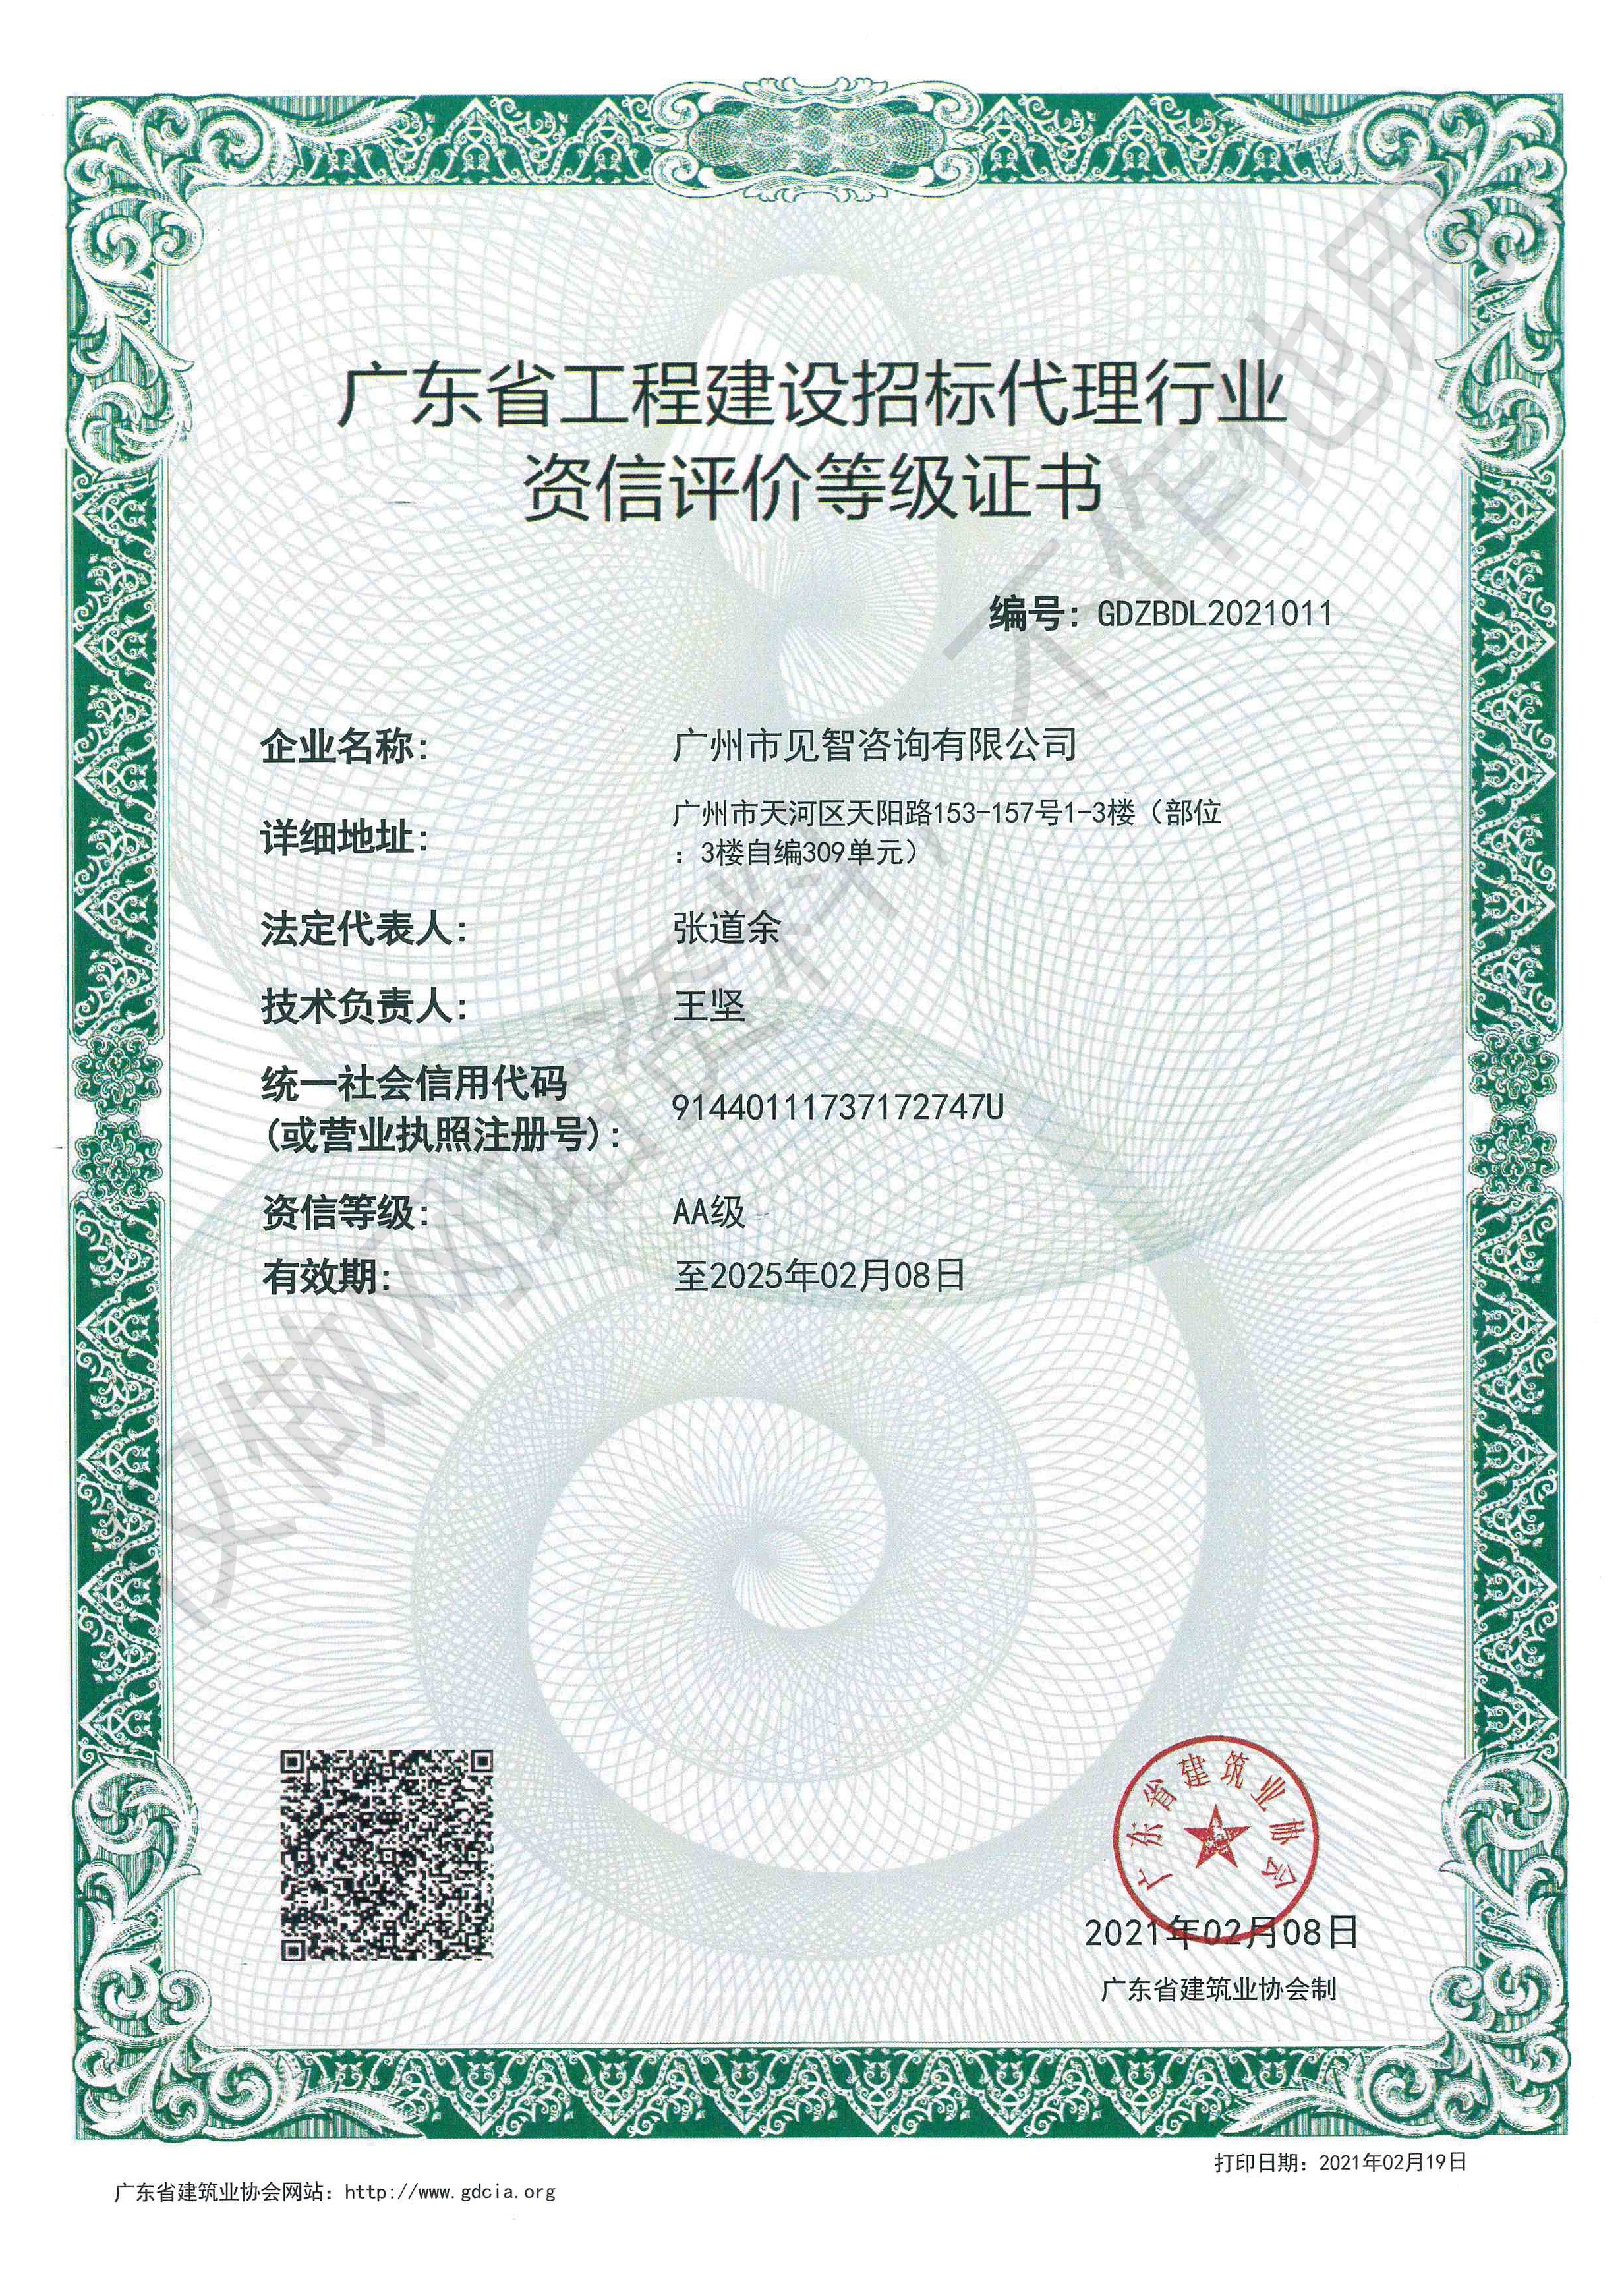 广东省工程建设招标代理行业资信评价等级证书,66速聘